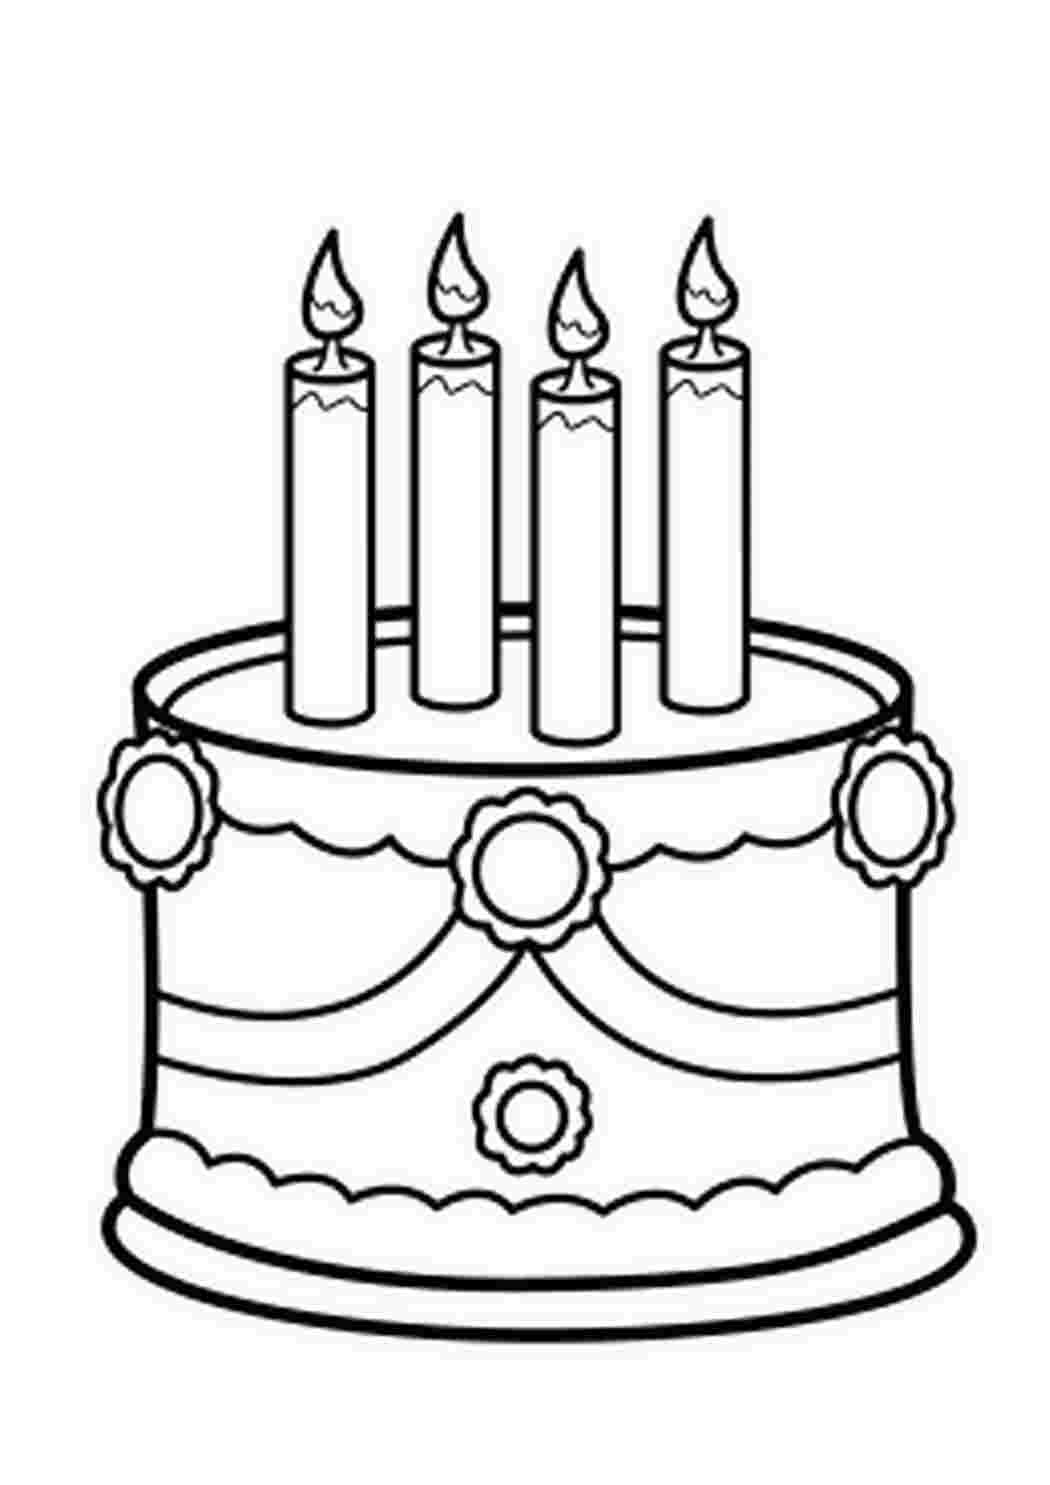 Раскраски Праздничный, торт, четыре свечи, раскраска Раскраски Торты и пирожные  